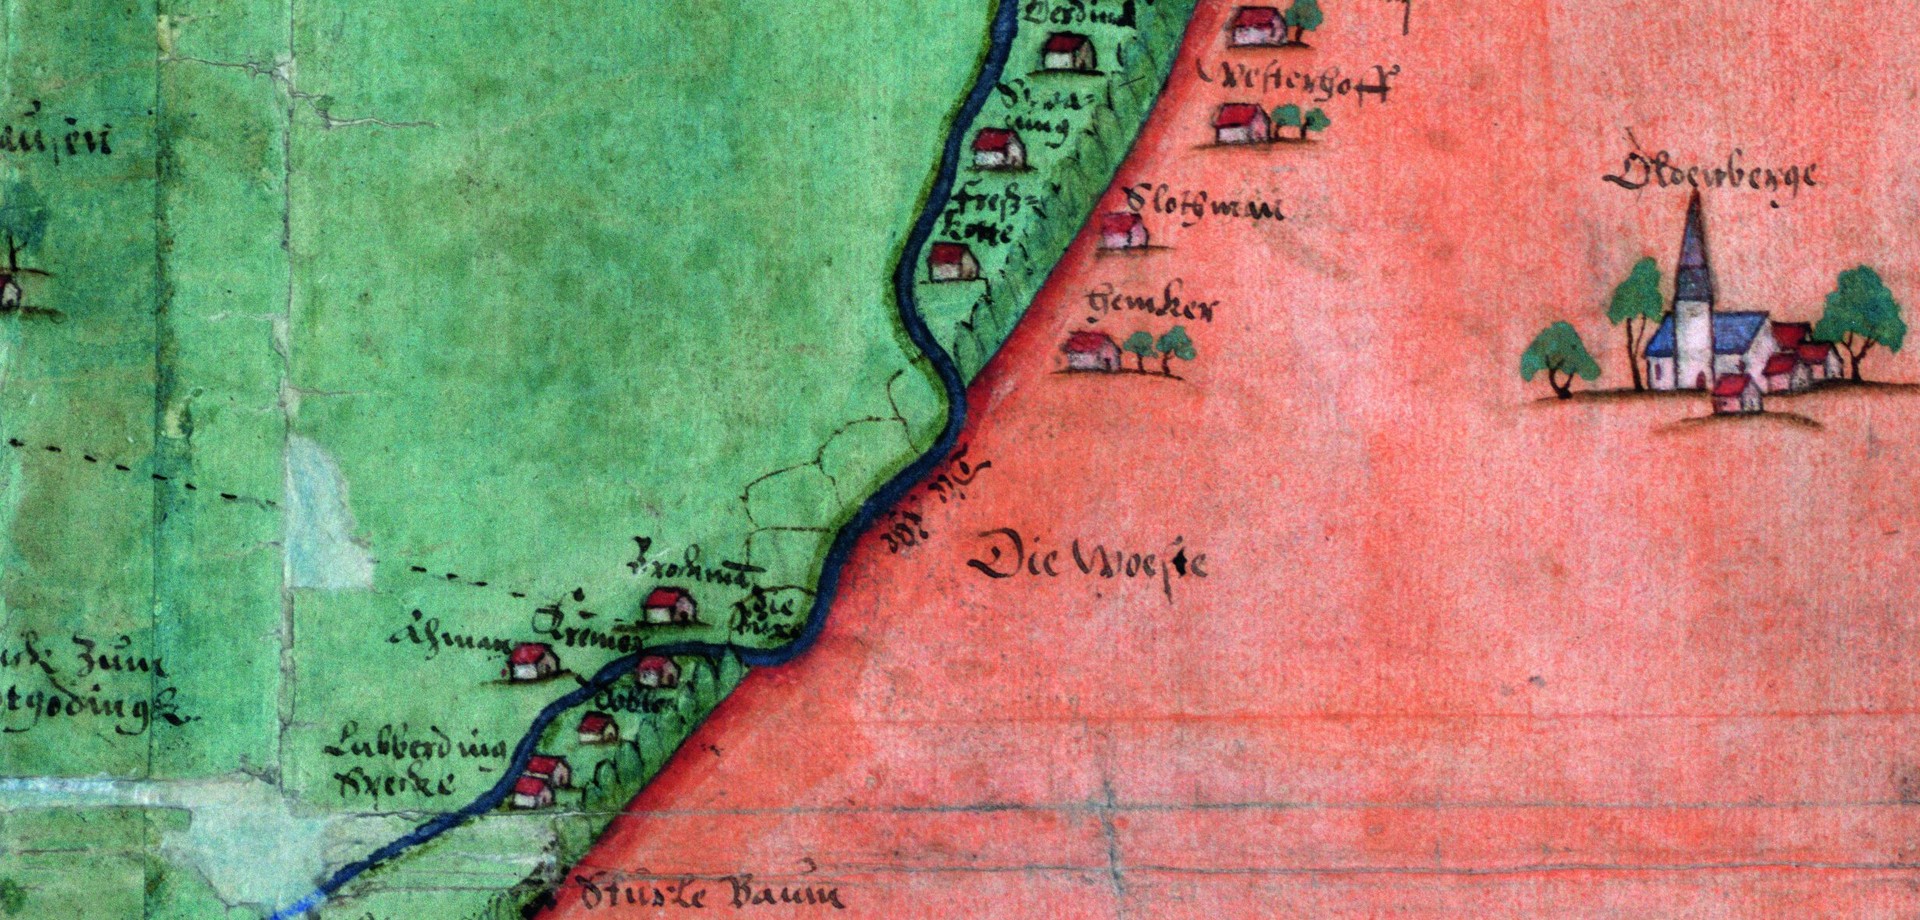 Die Altenberger Landwehr auf einer Karte der Reichsgrafschaft Steinfurt von 1597 (Landesarchiv NRW - Abt. Westfalen, Karte A 1265).